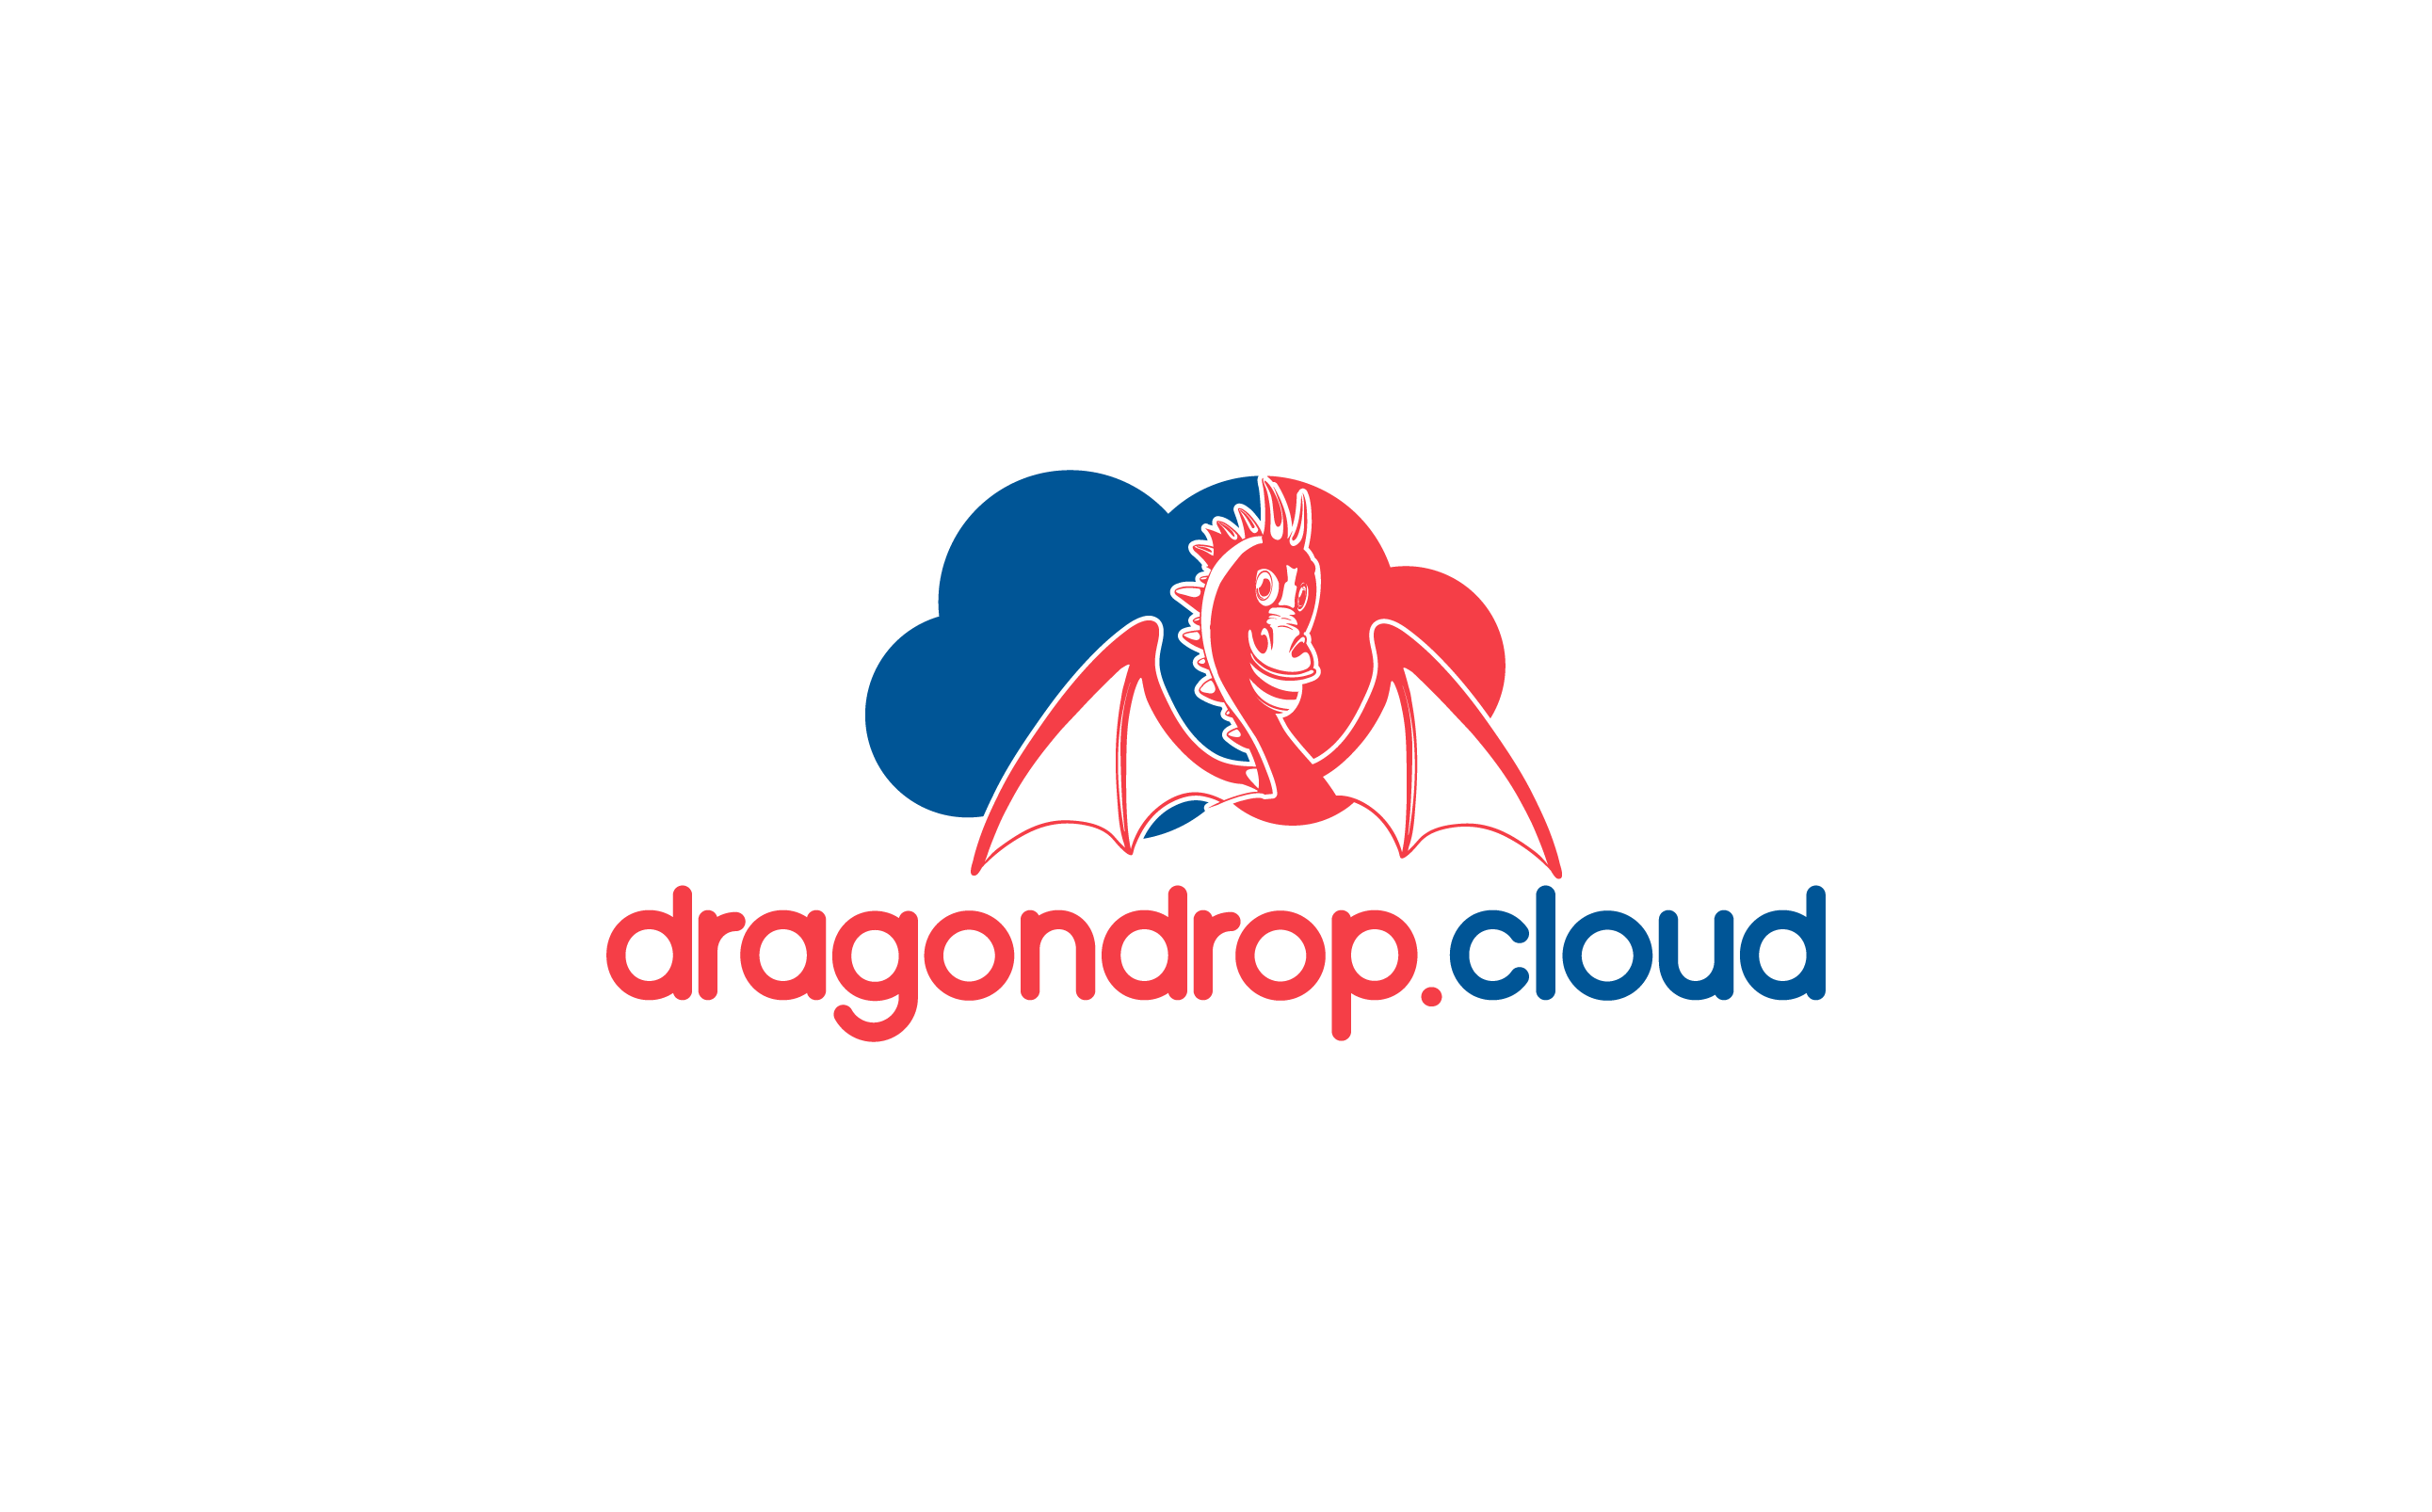 dragondrop.cloud, Inc.